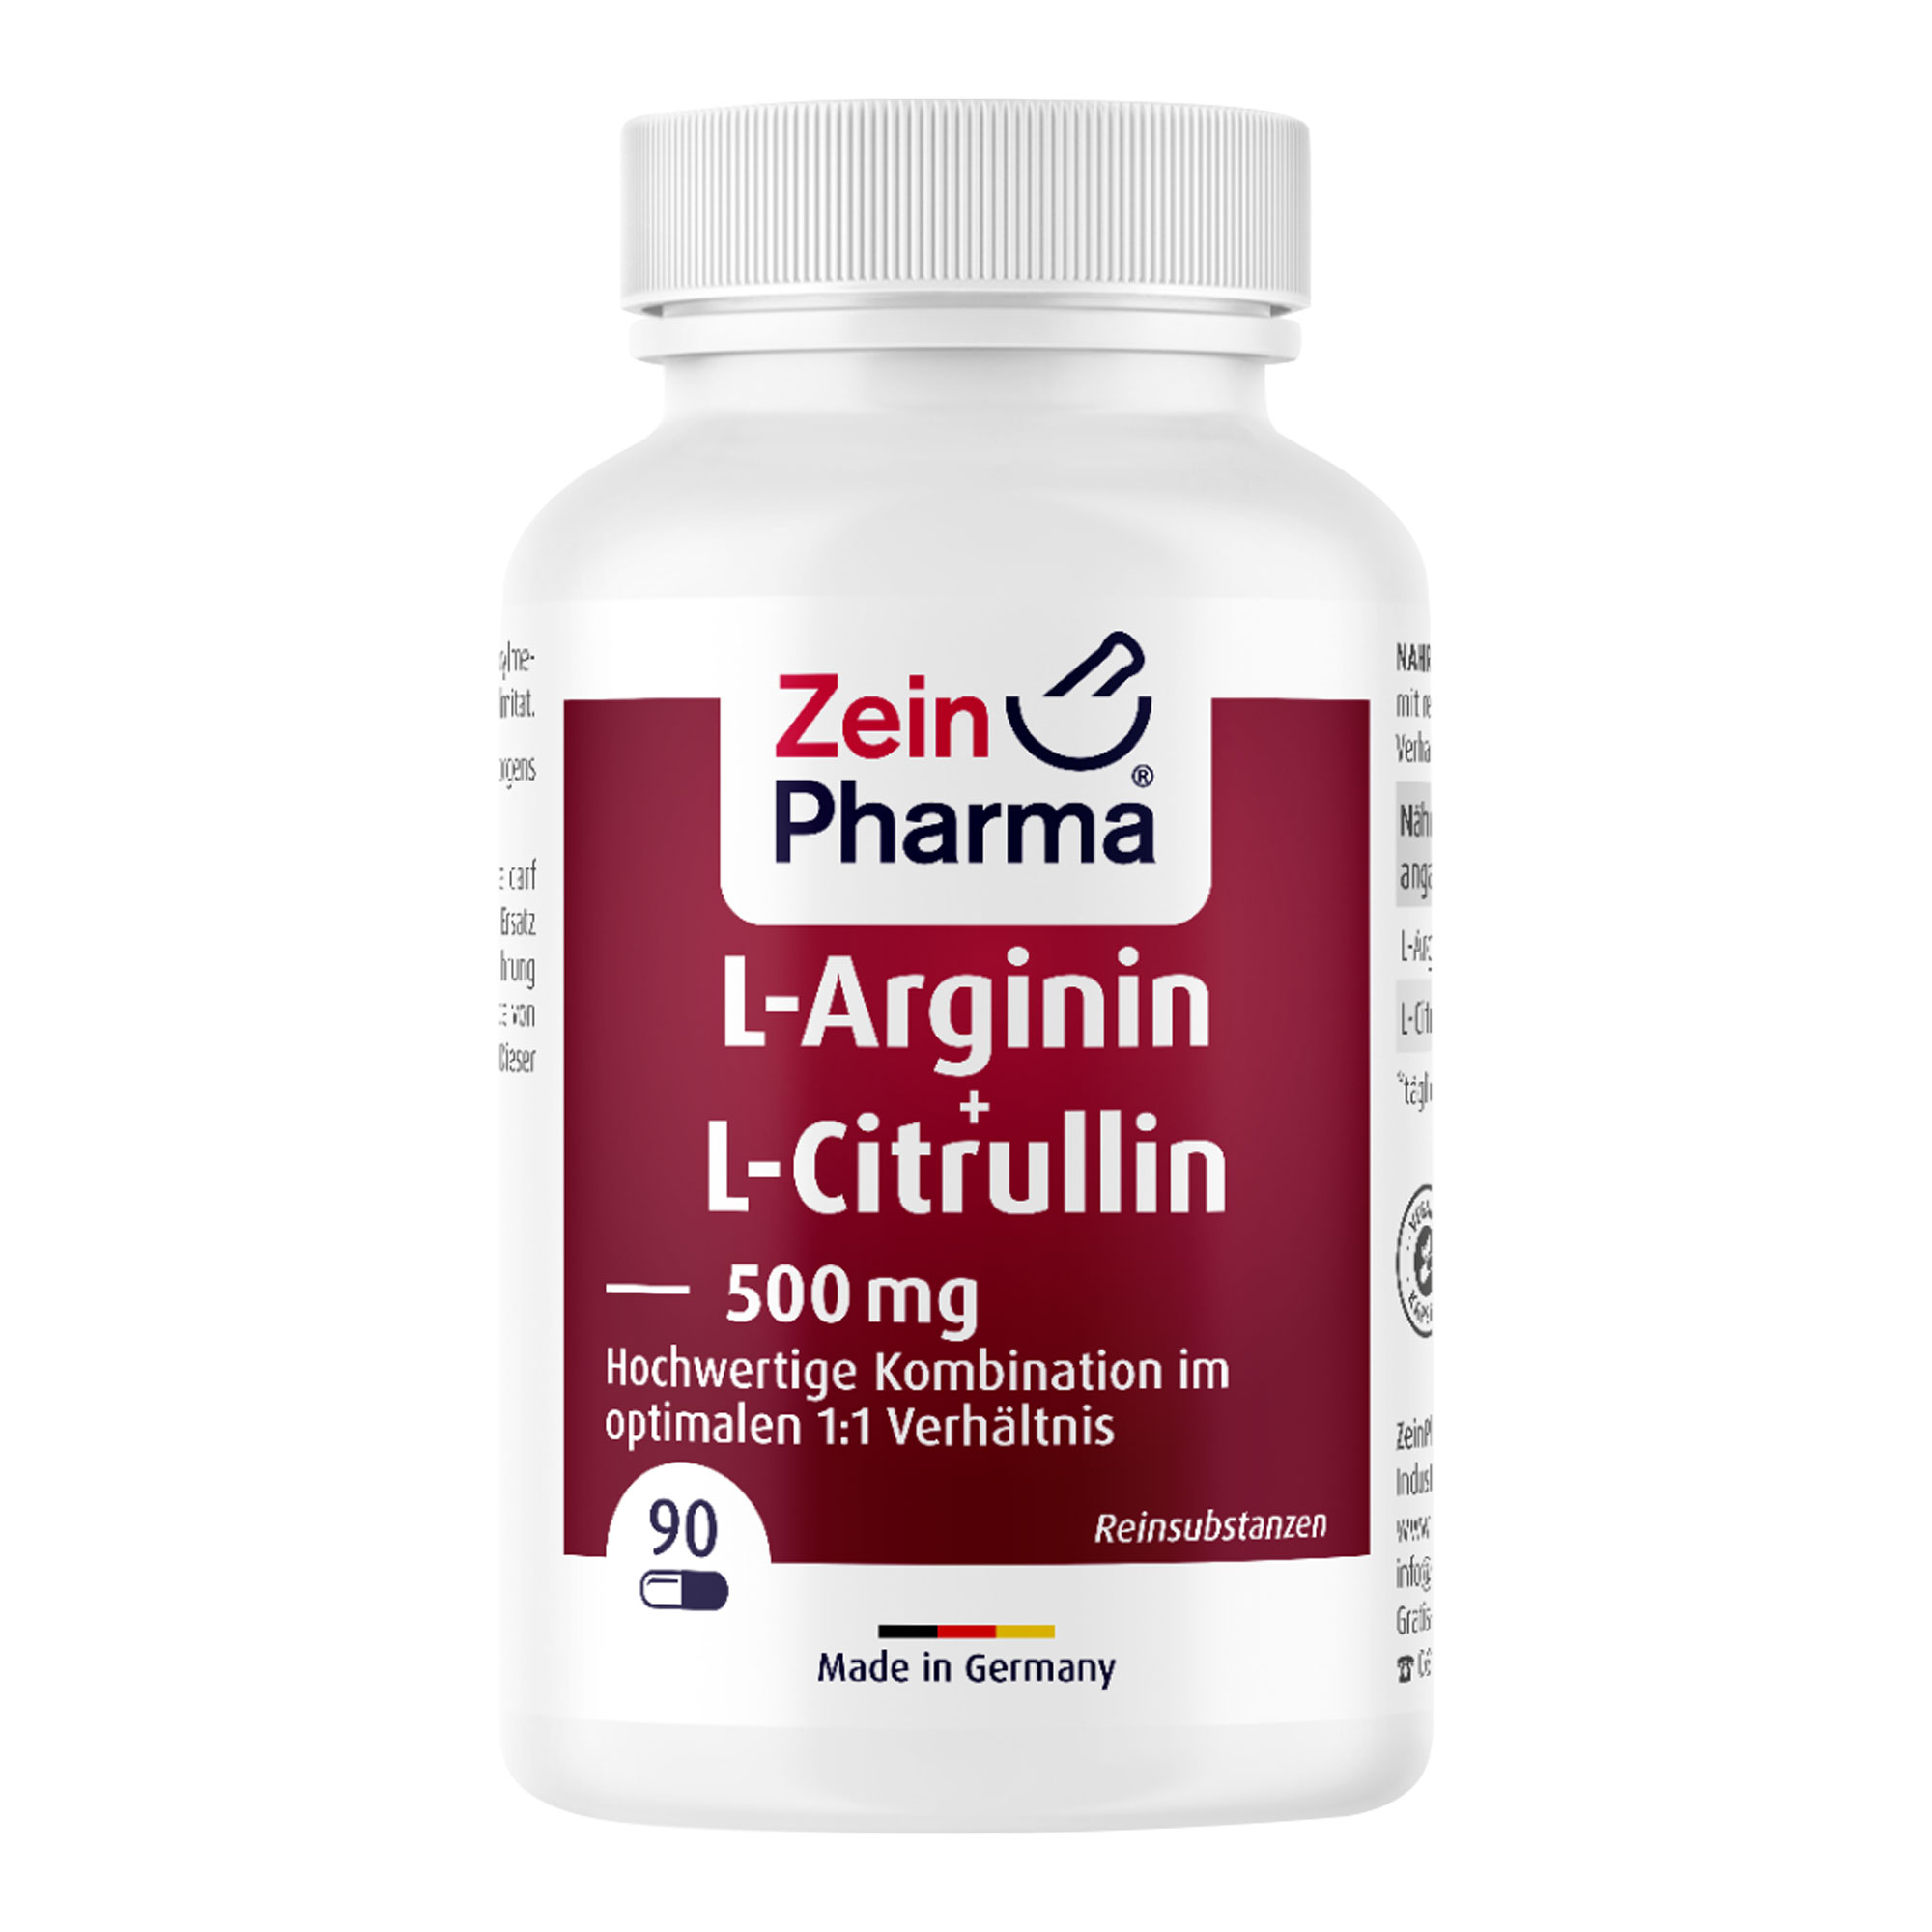 Nahrungsergänzungsmittel mit reinem L-Arginin und L-Citrullin in einem Verhältnis von 1:1 in veganen Kapseln.